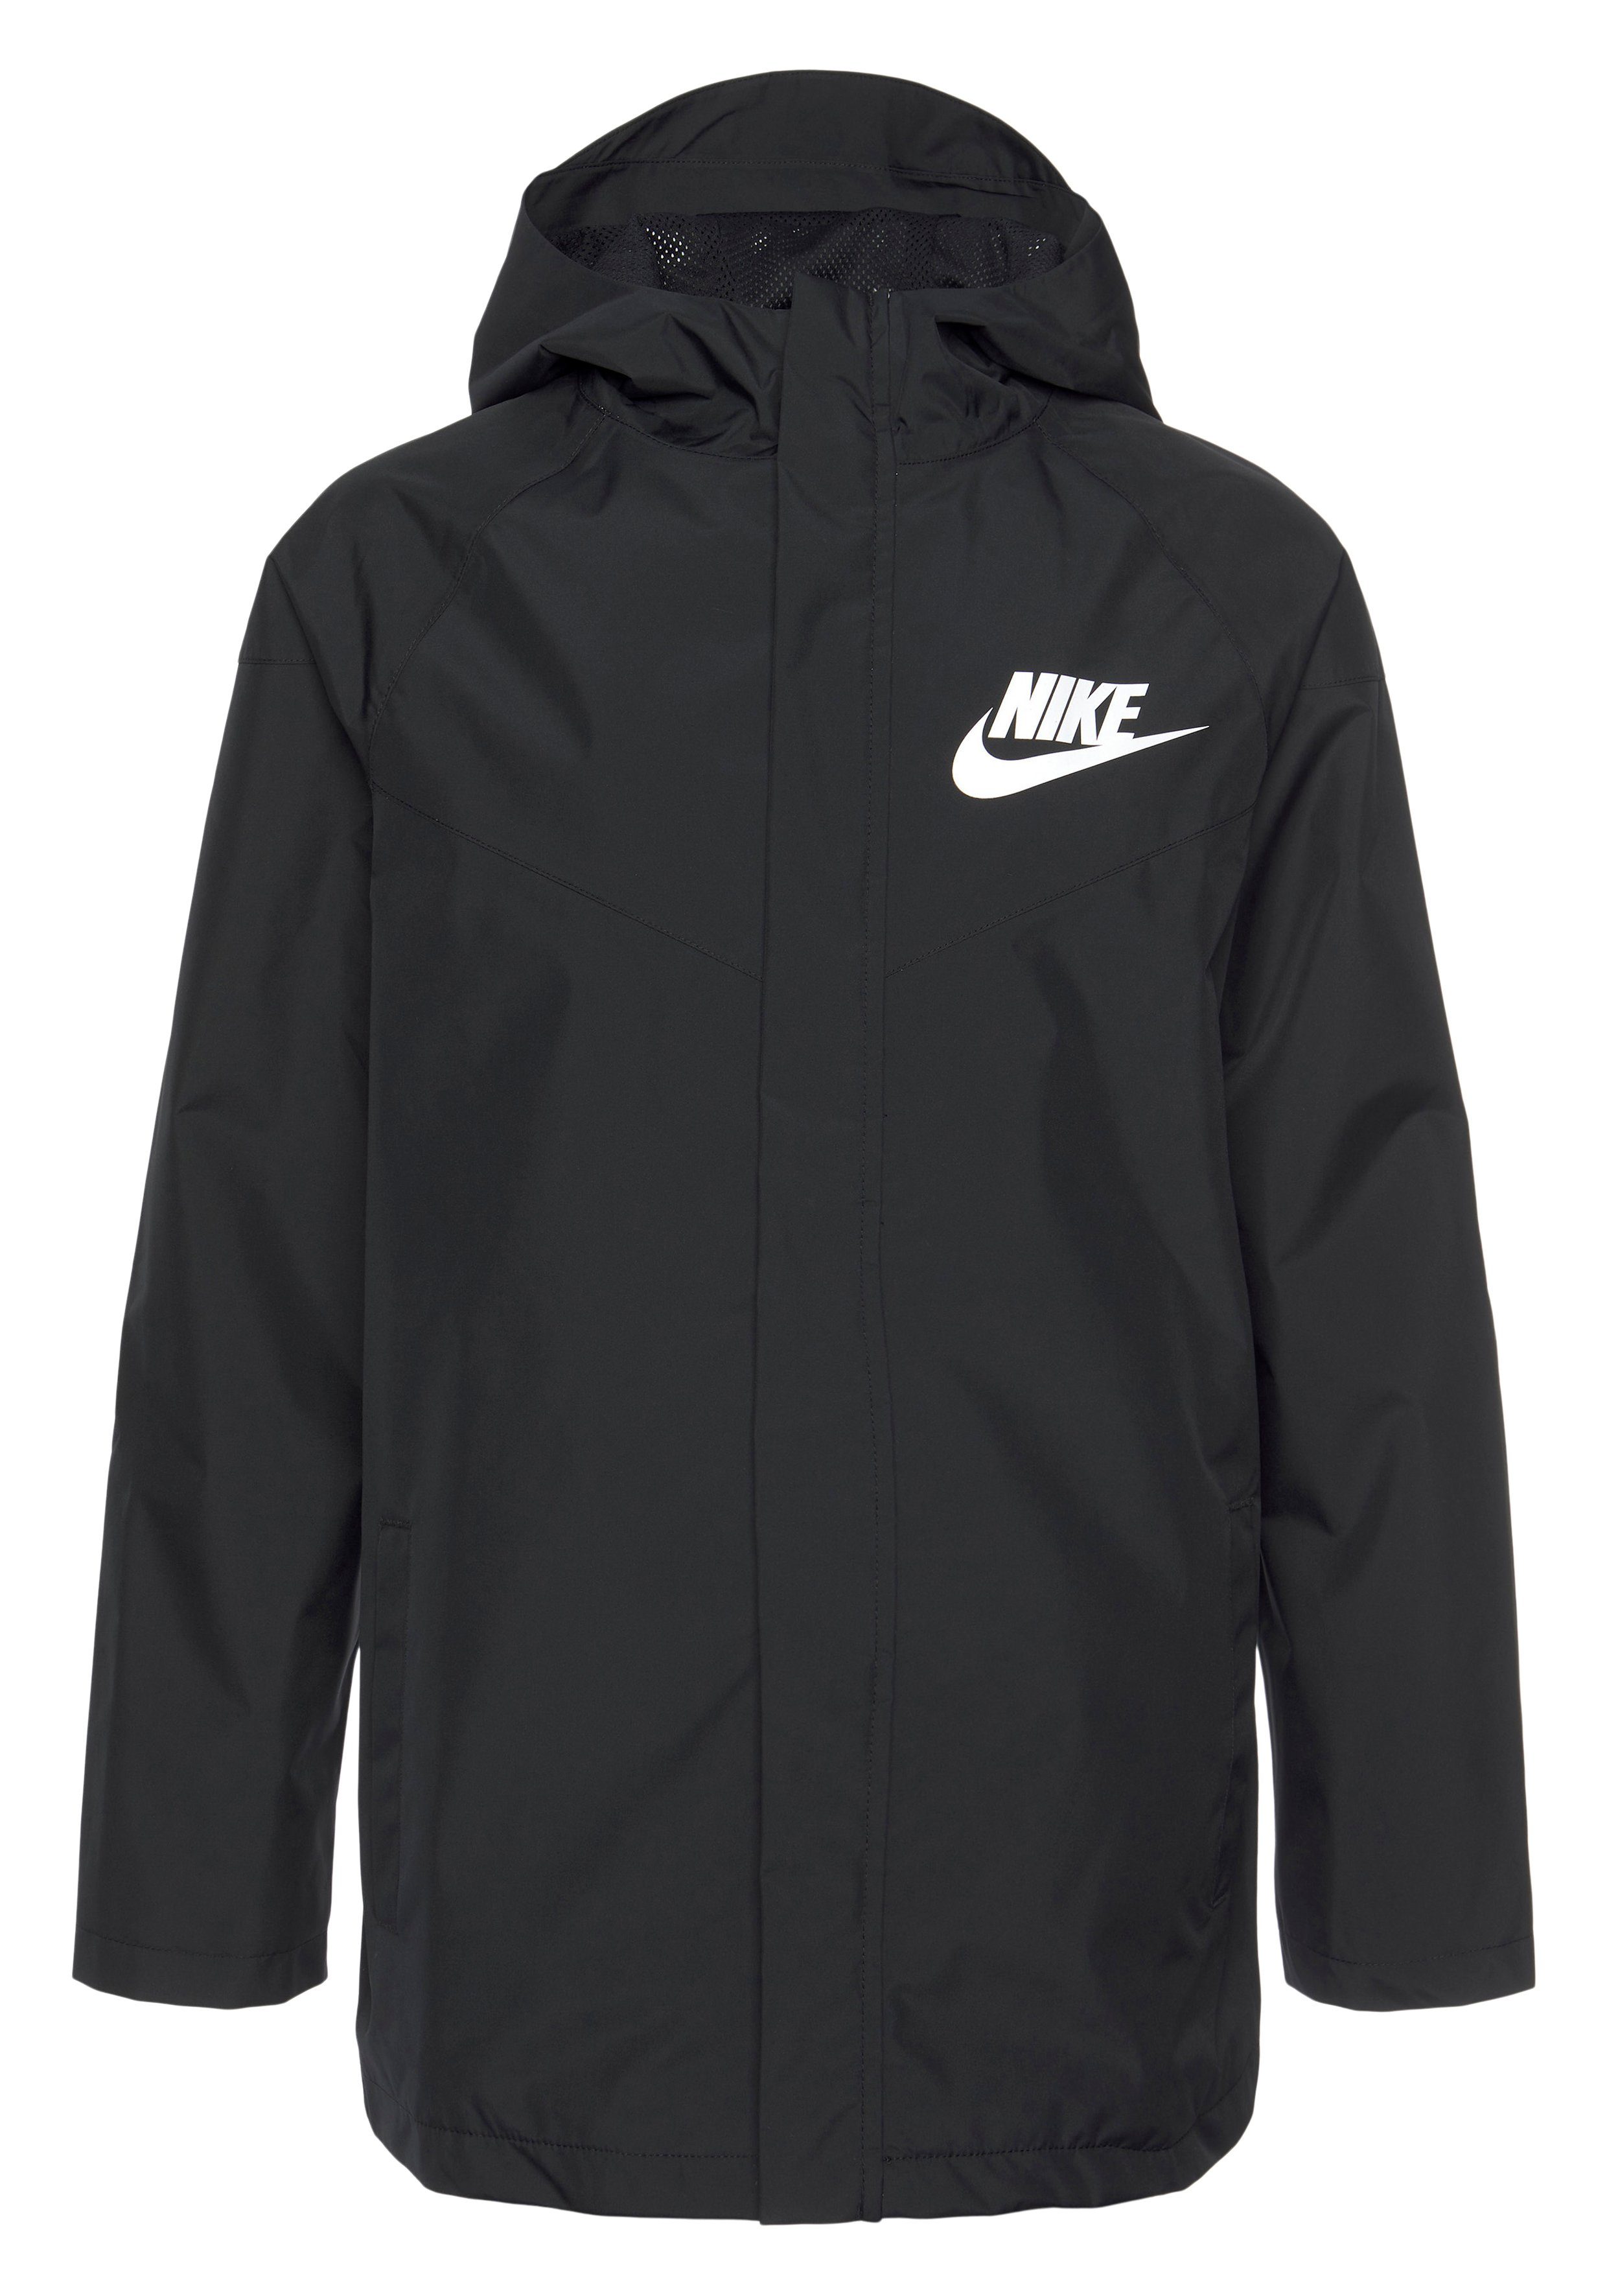 Windrunner Jacket BLACK/BLACK/WHITE Windbreaker Big Storm-FIT (Boys) Sportswear Kids' Nike